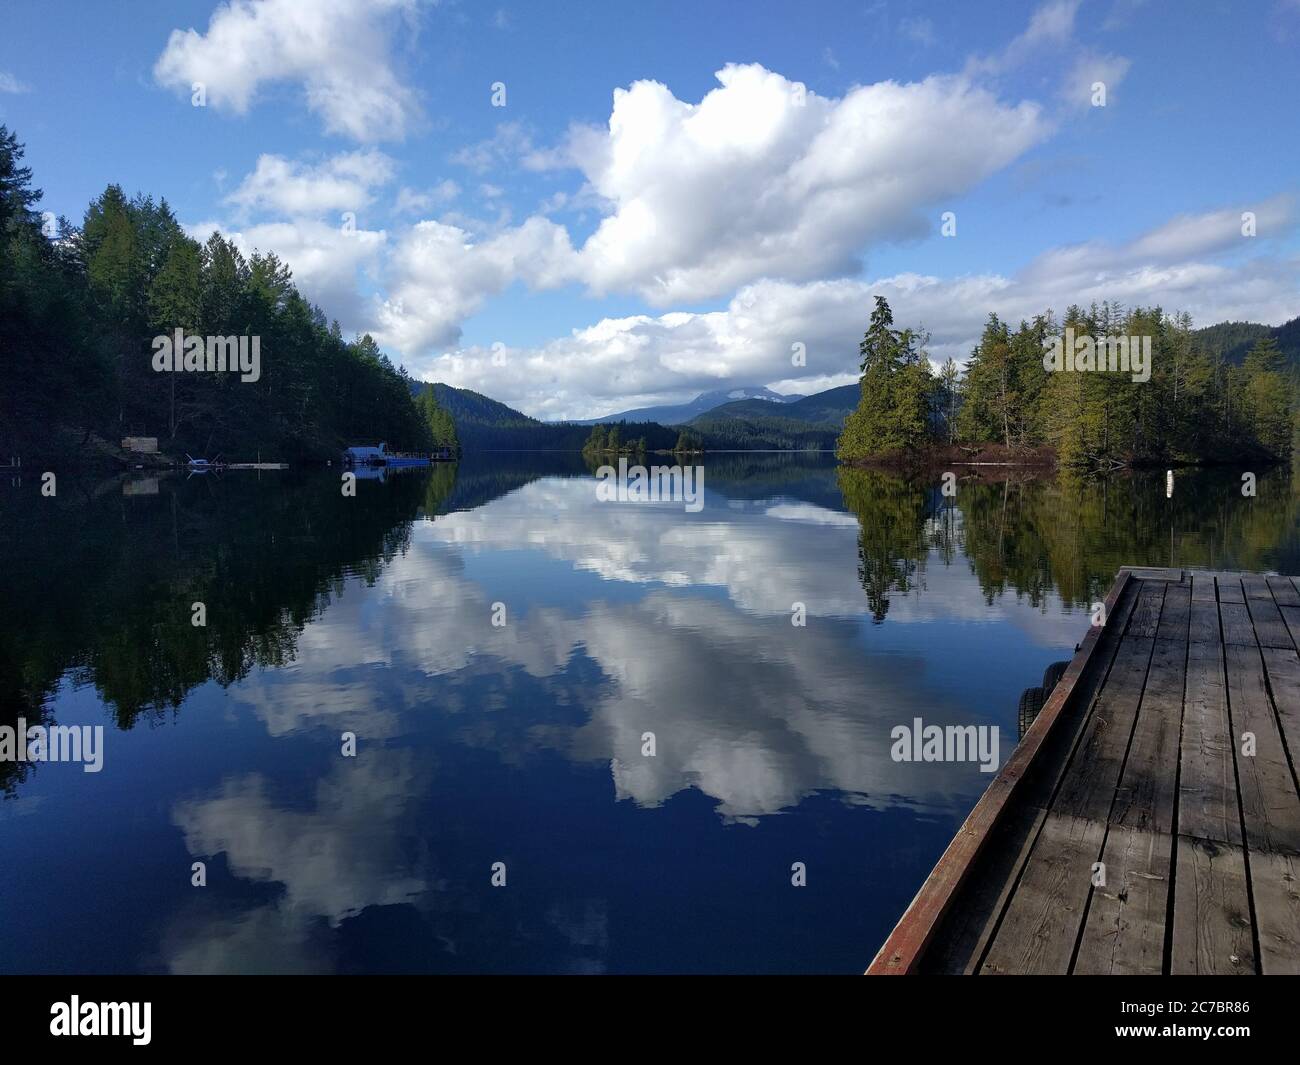 Photo de paysage d'un lac à Skookumchuck Narrows, Canada, avec le ciel reflété dans l'eau claire Banque D'Images